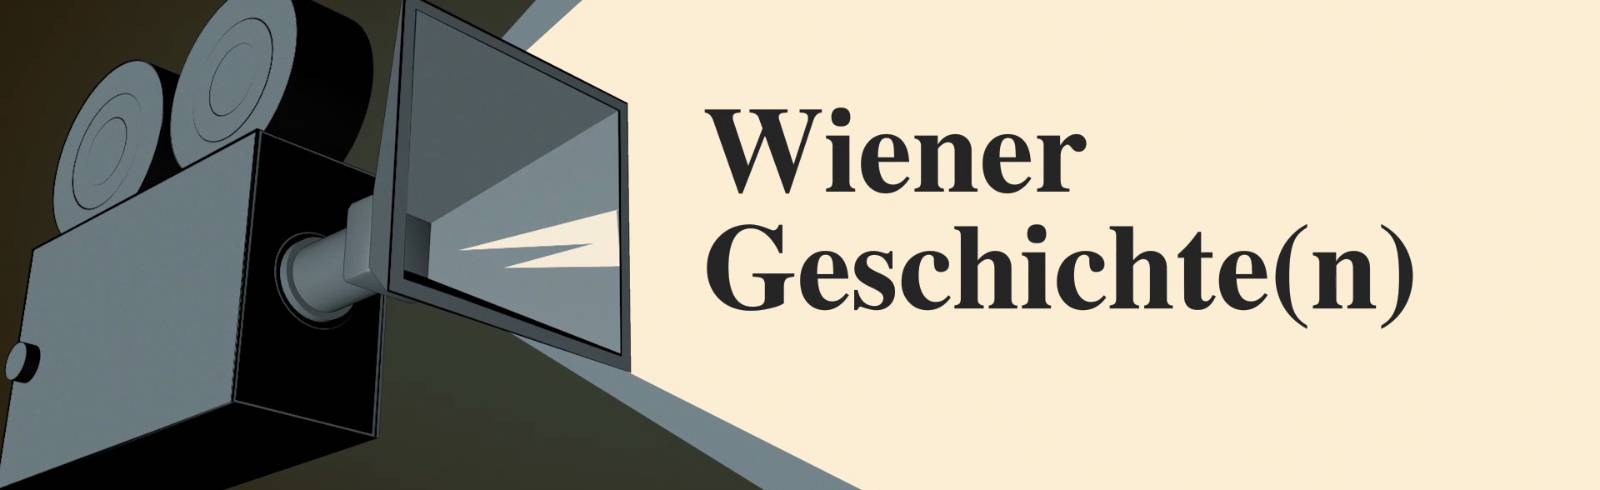 Wiener Geschichten - Wachaufahrt 1962